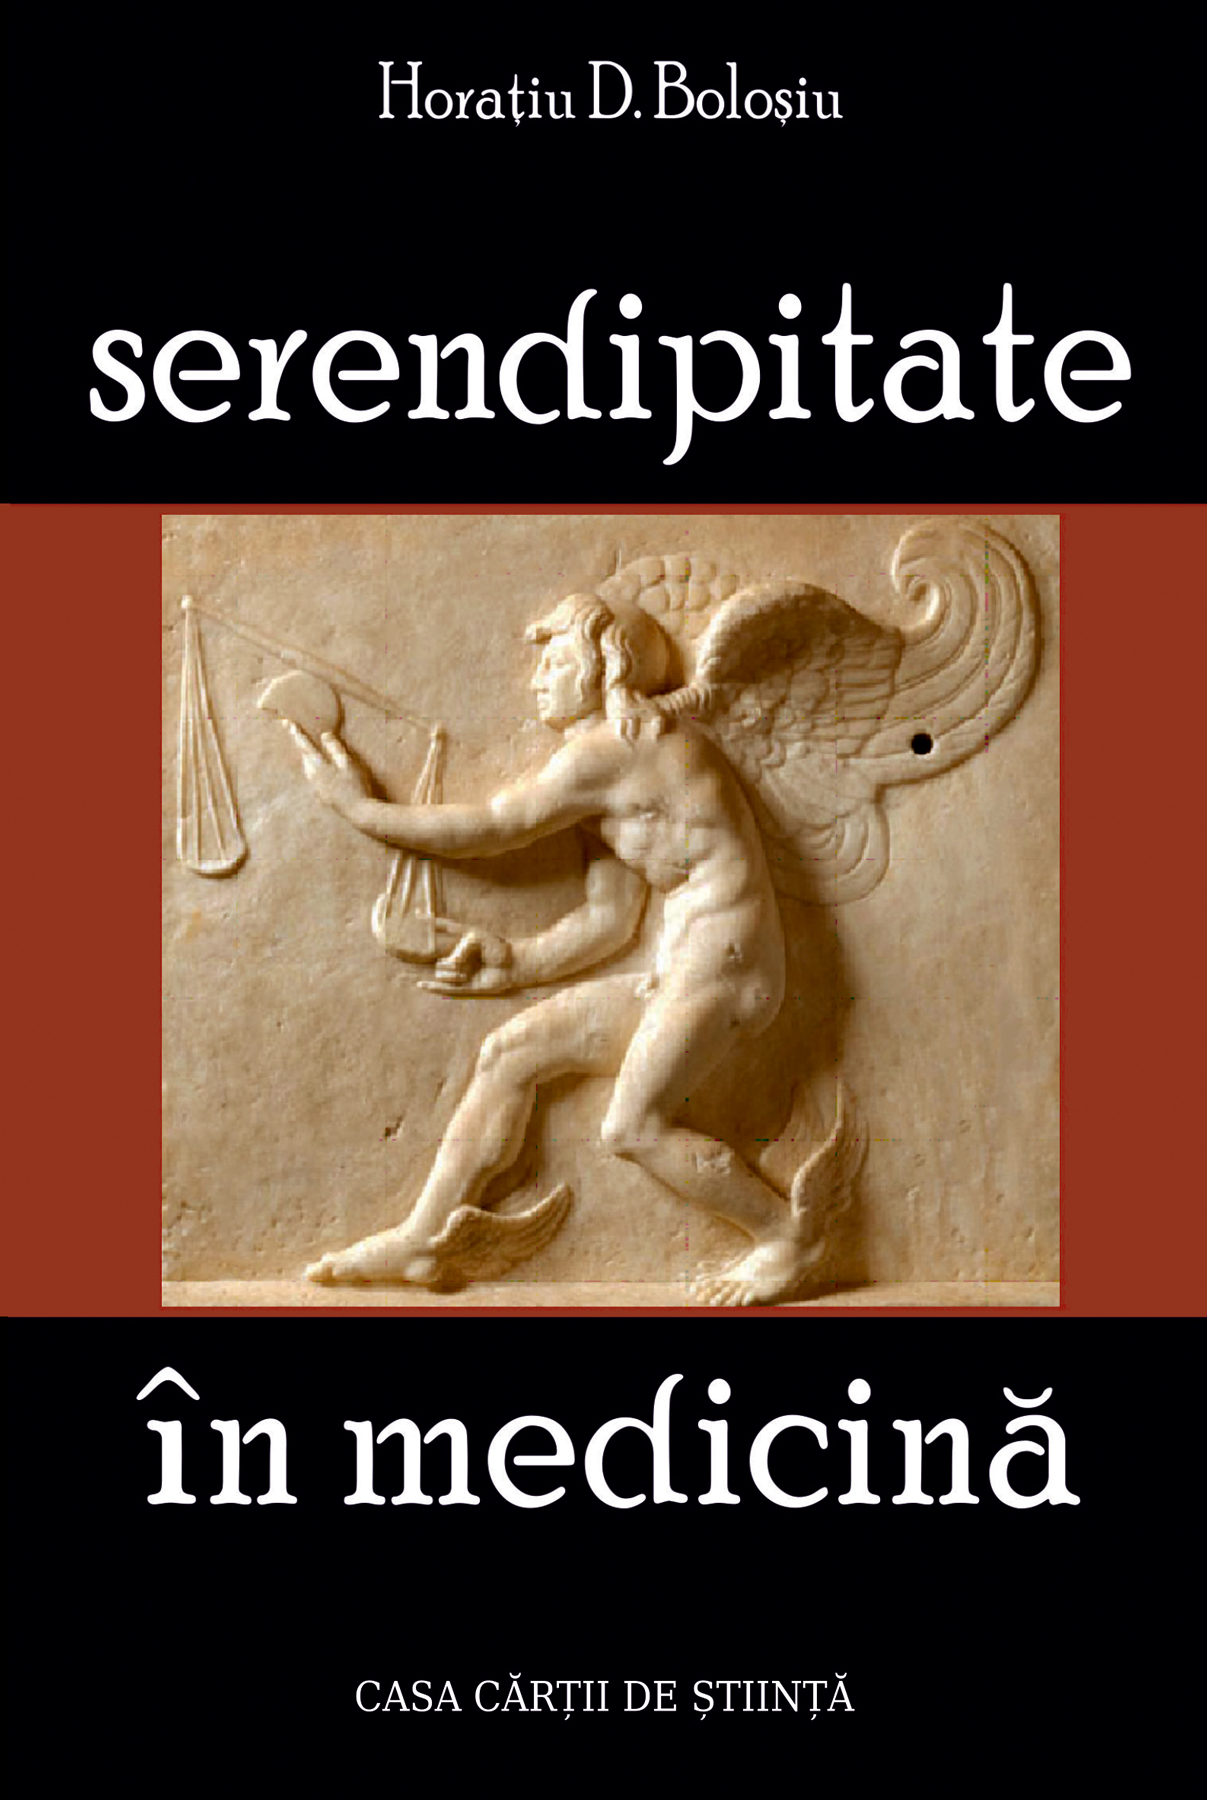 Coperta cărții: Serendipitate in medicina - lonnieyoungblood.com